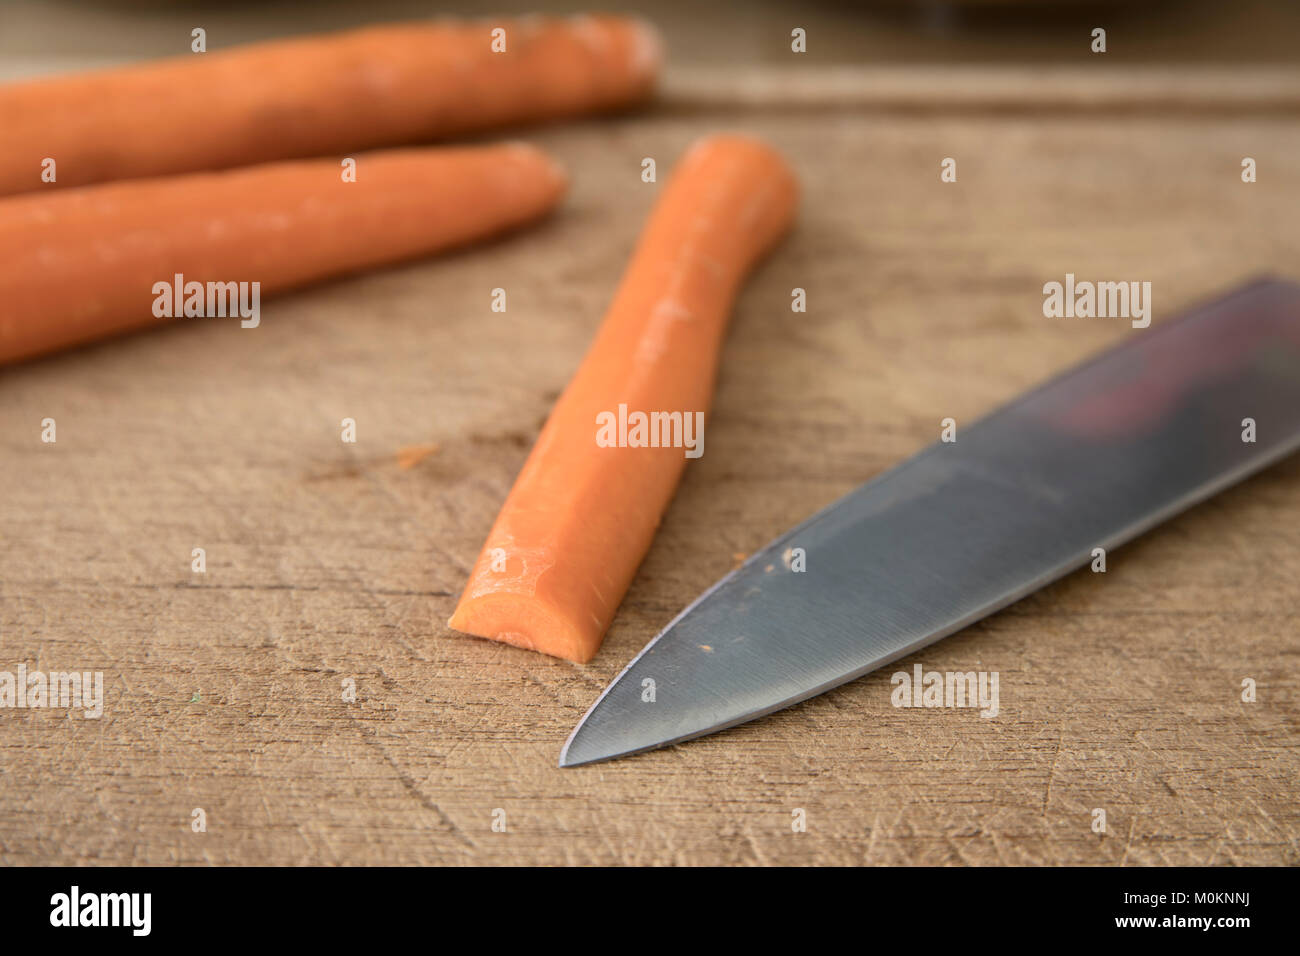 Messer Fähigkeiten Schneiden eine Karotte: Karotte und Kochmesser auf Schneidebrett. Stockfoto